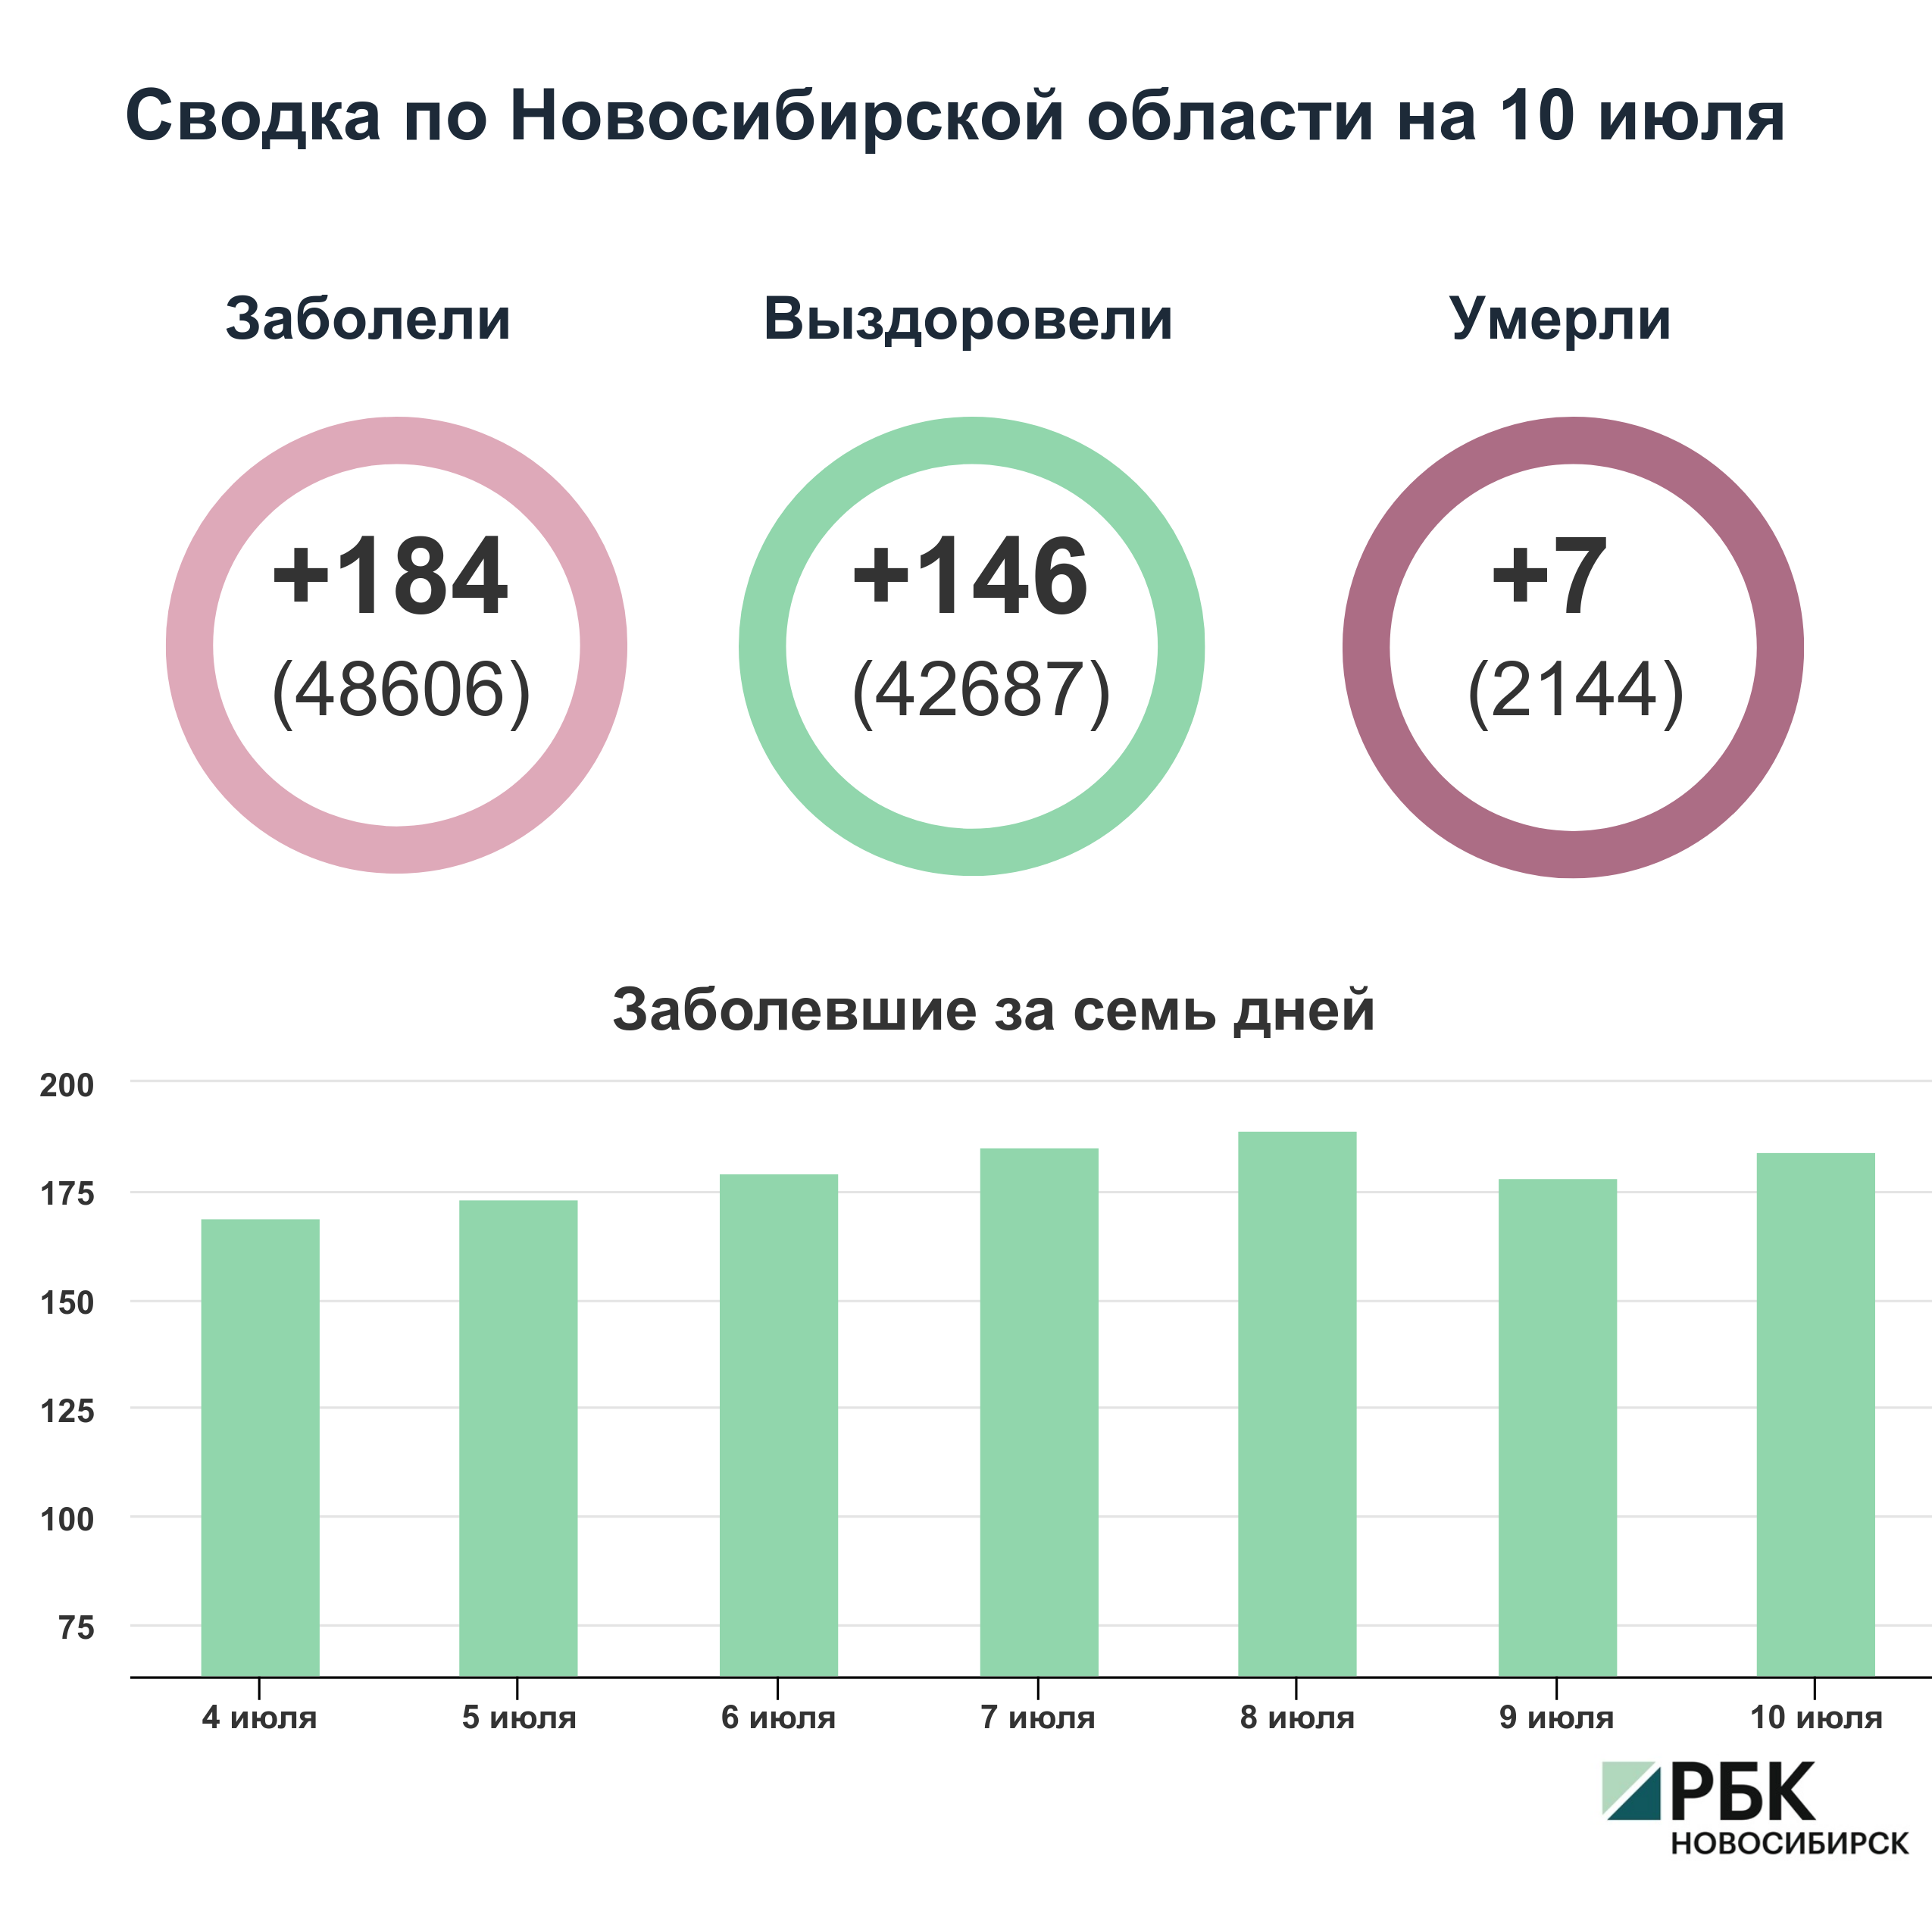 Коронавирус в Новосибирске: сводка на 10 июля